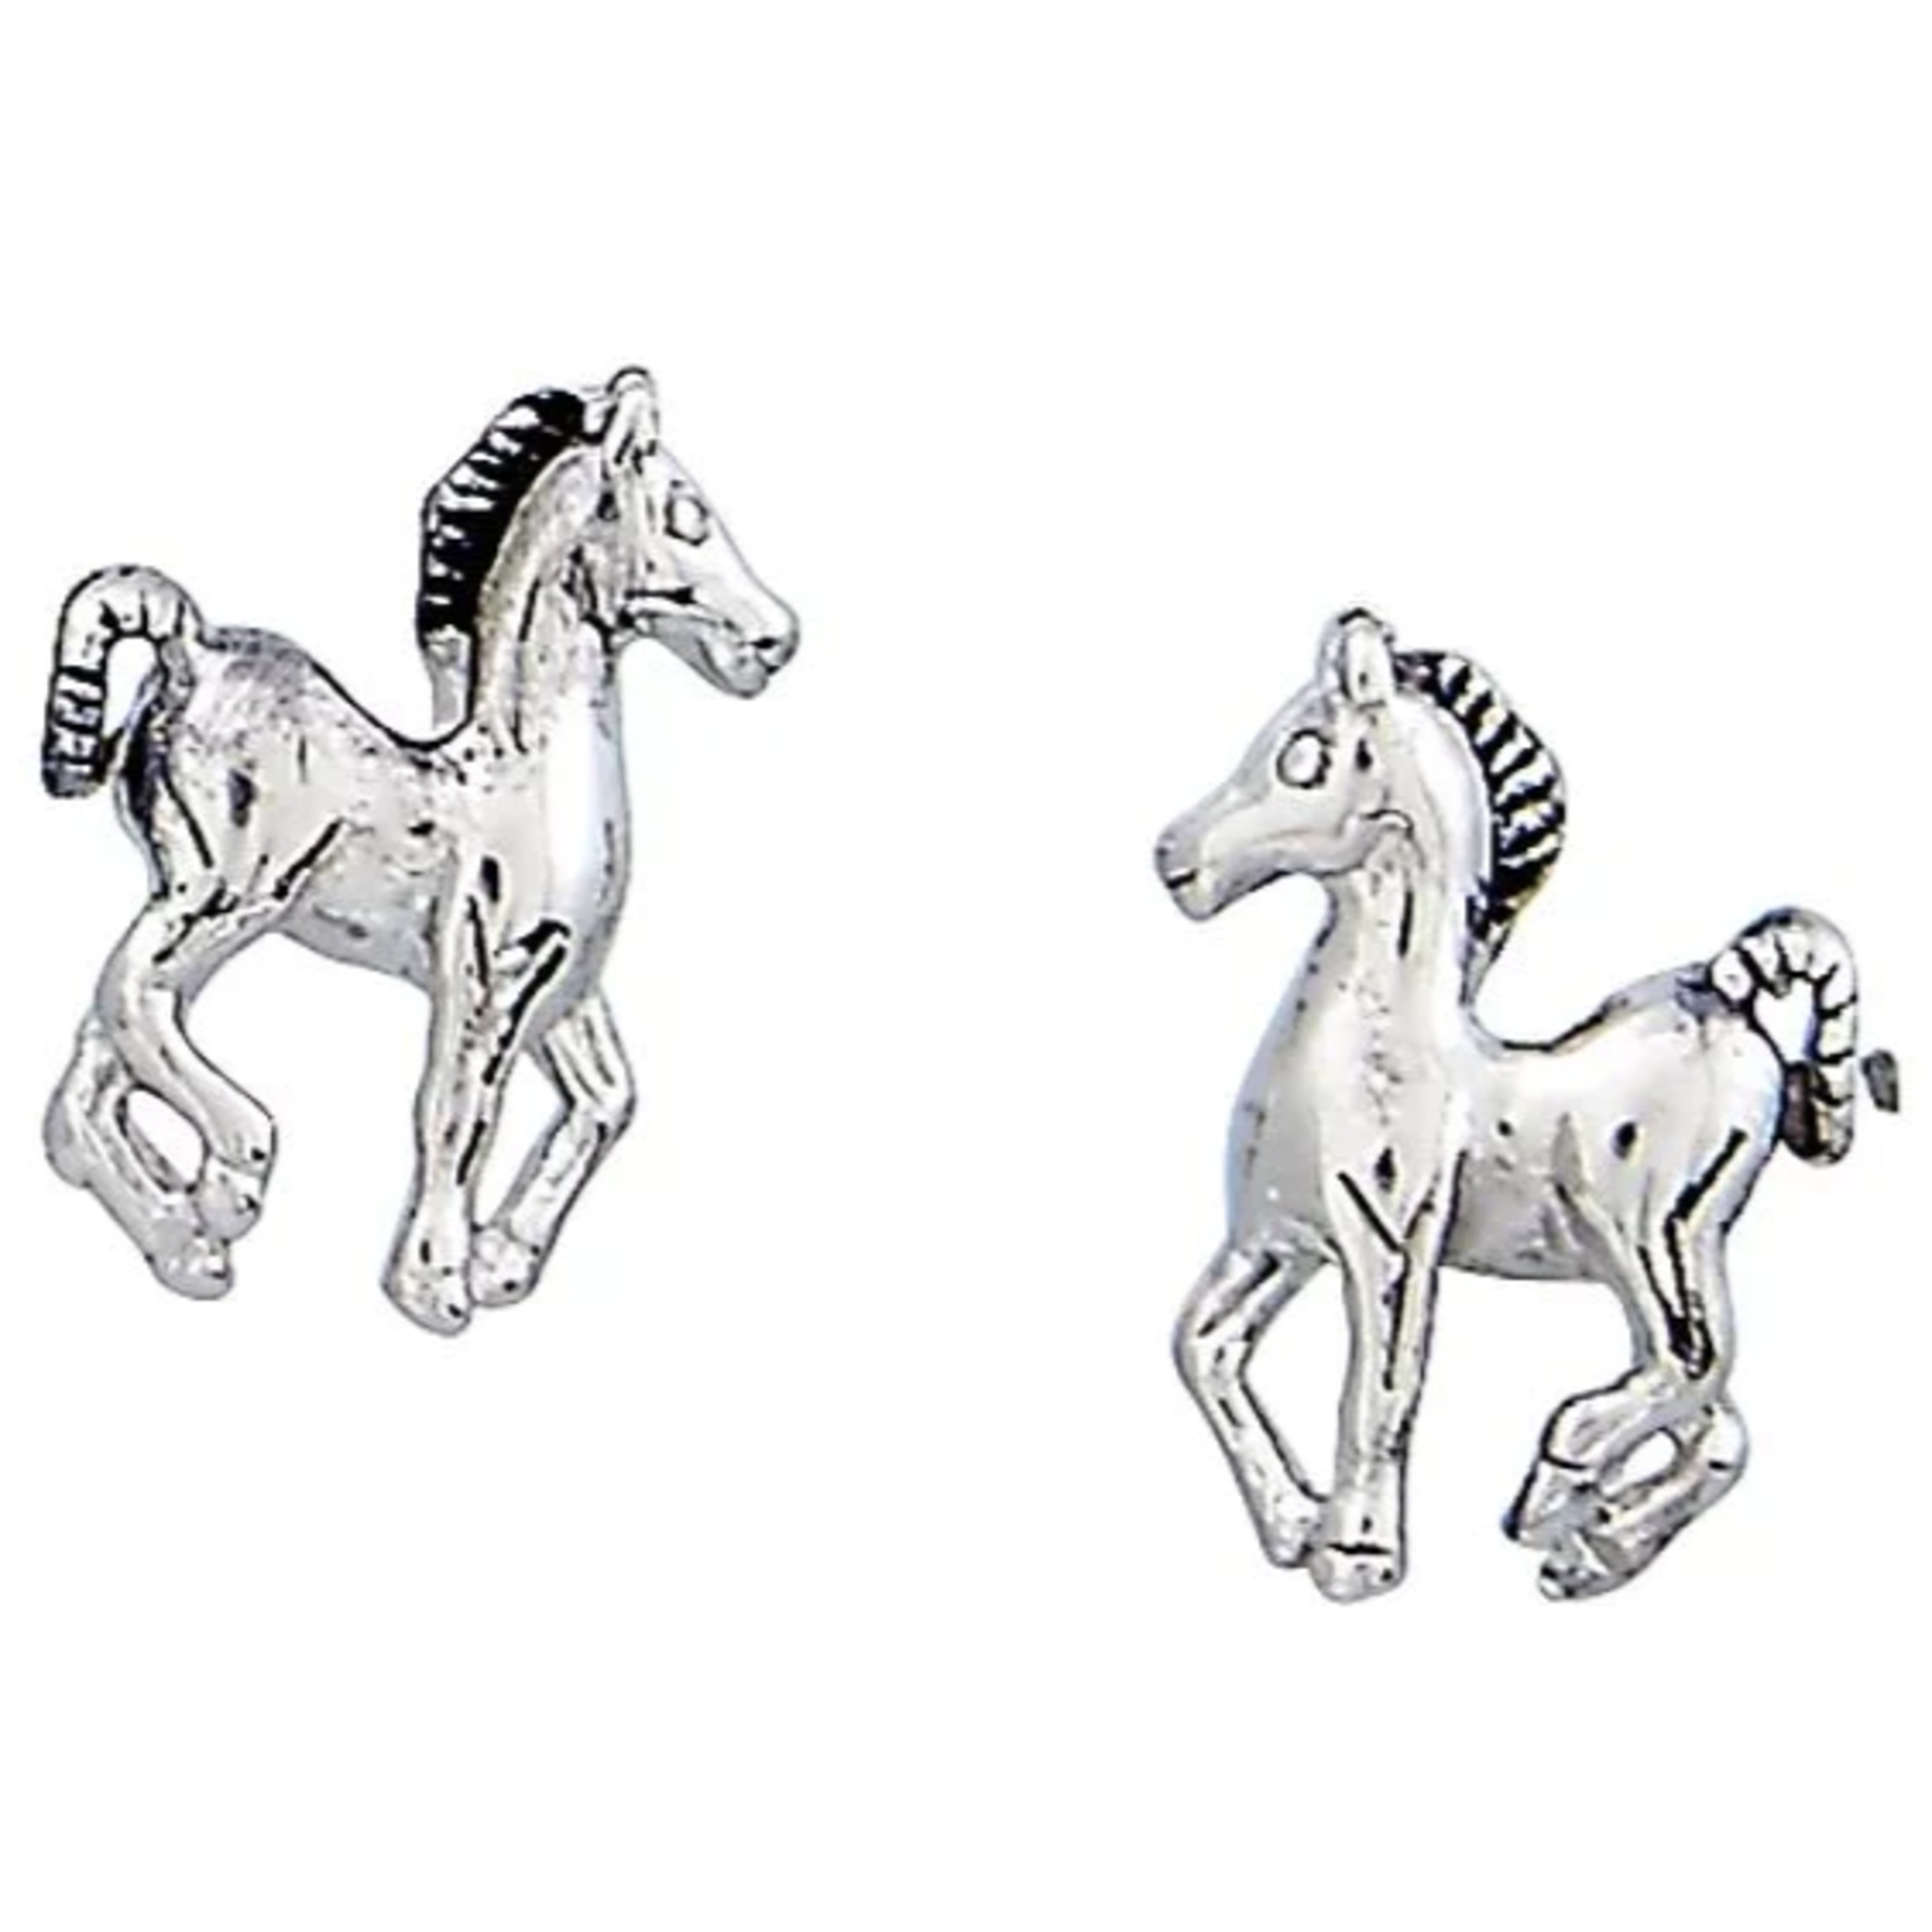 Prancing Pony Earrings